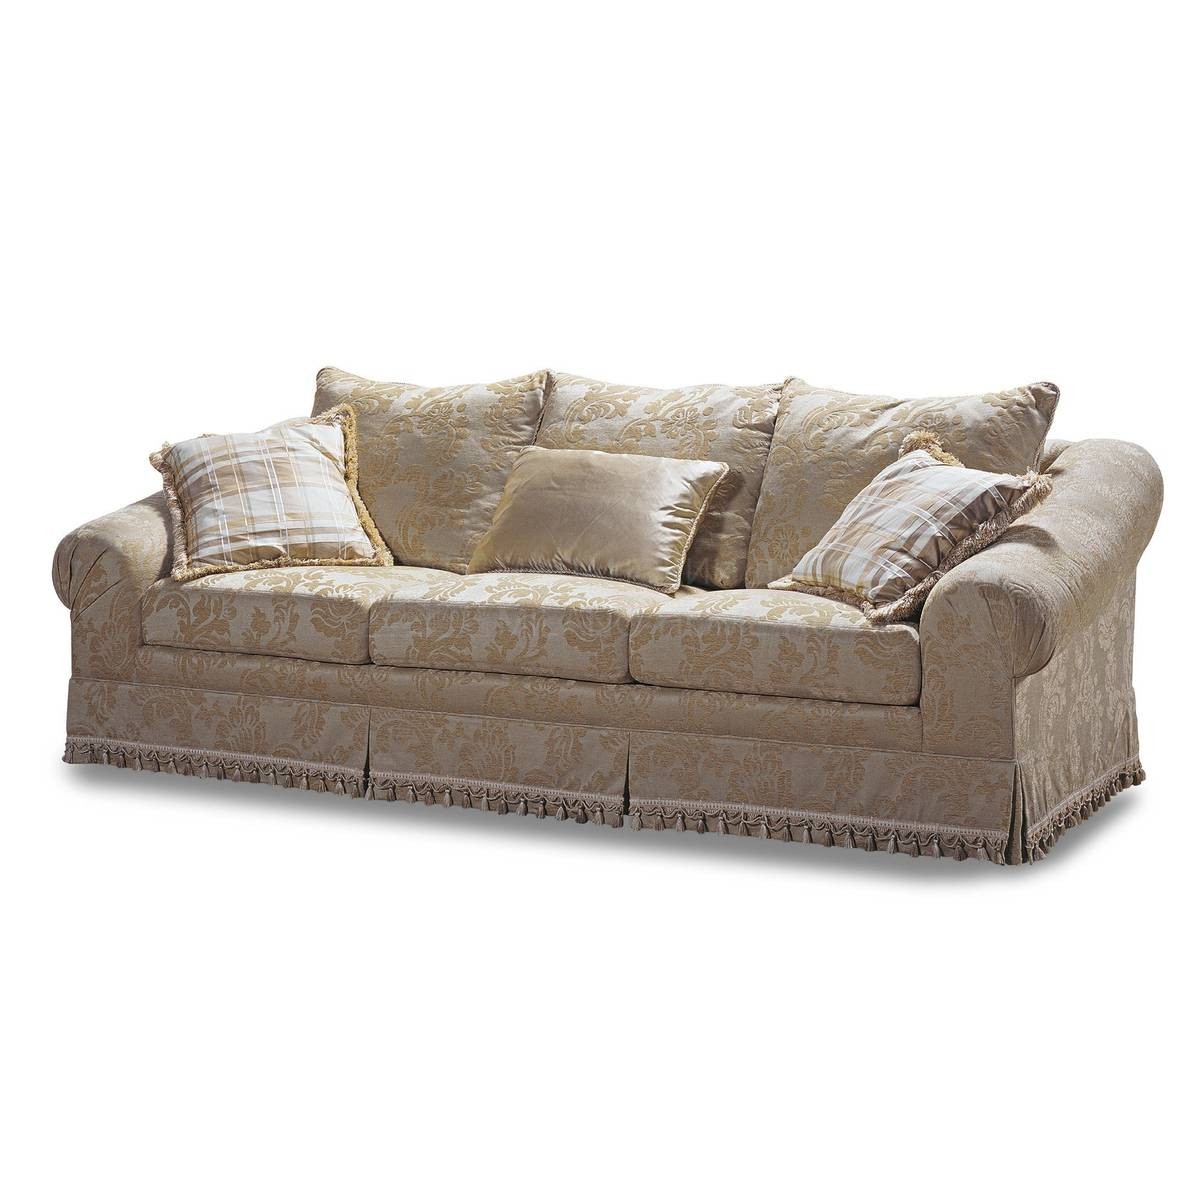 Прямой диван The Upholstery/D373 из Италии фабрики FRANCESCO MOLON